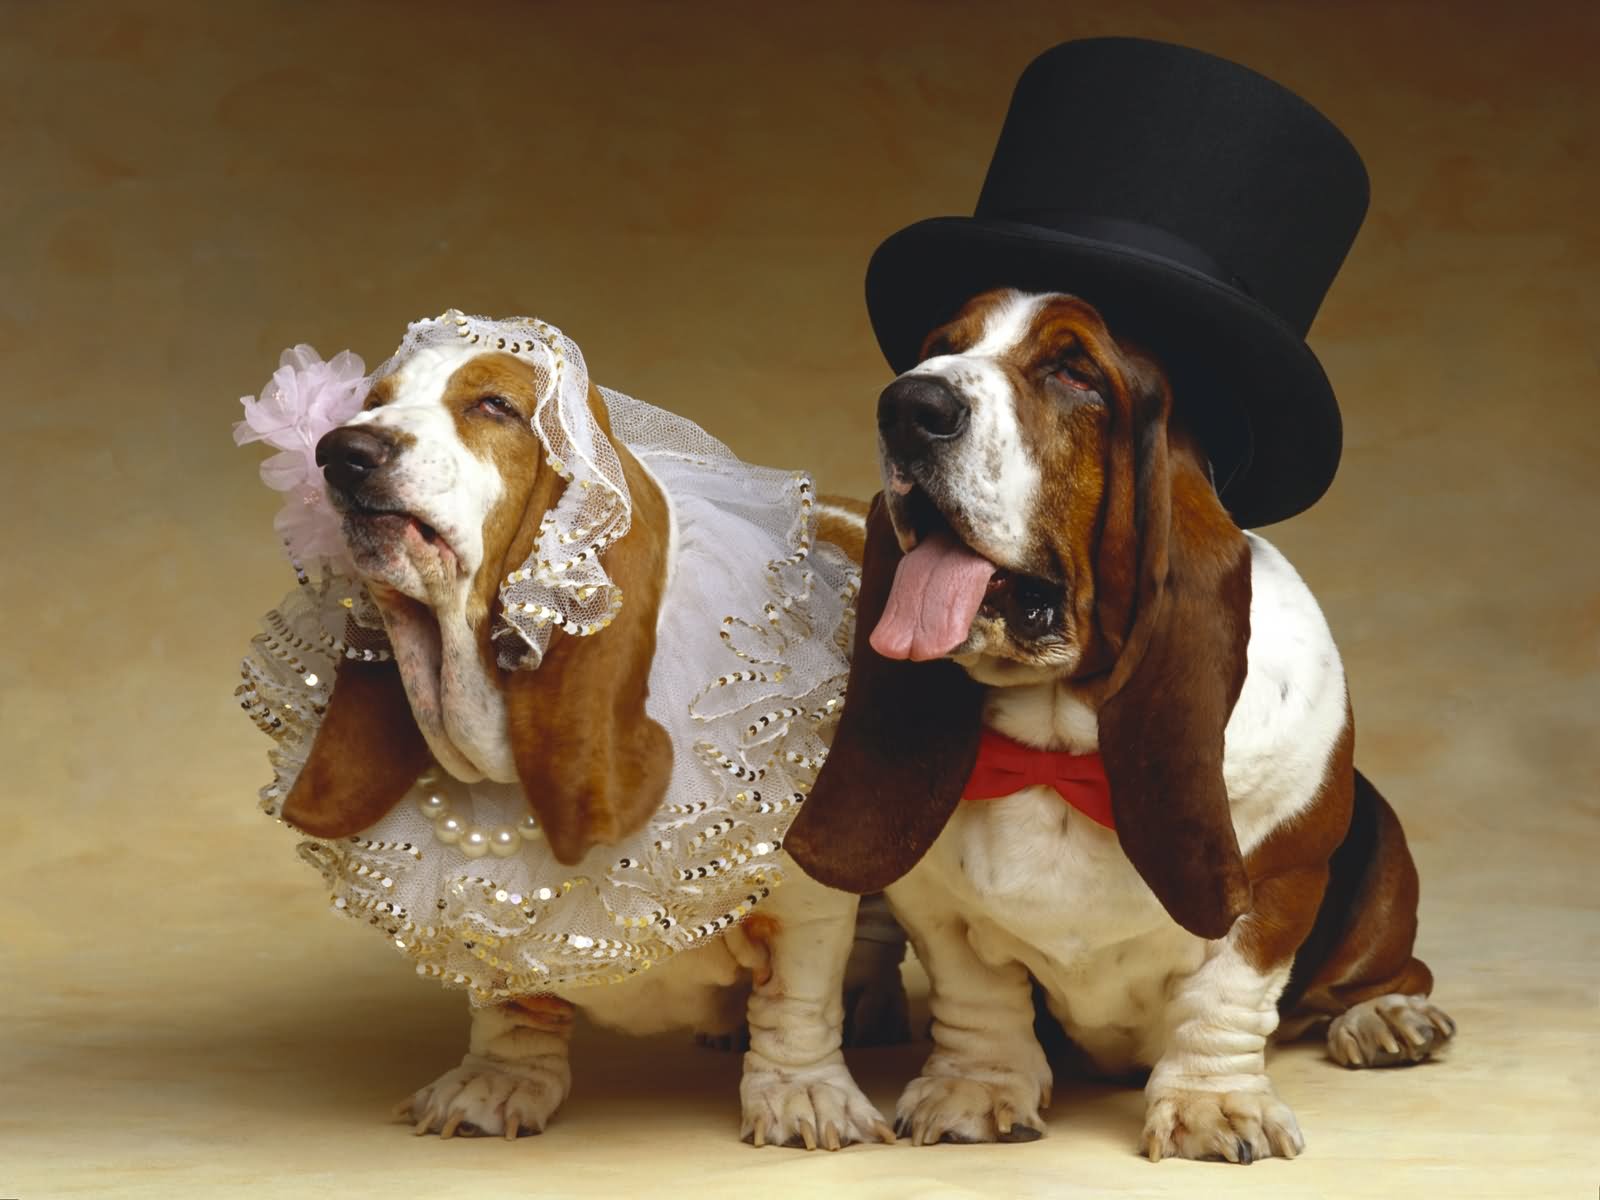 Funny Wedding Dog Couple Image